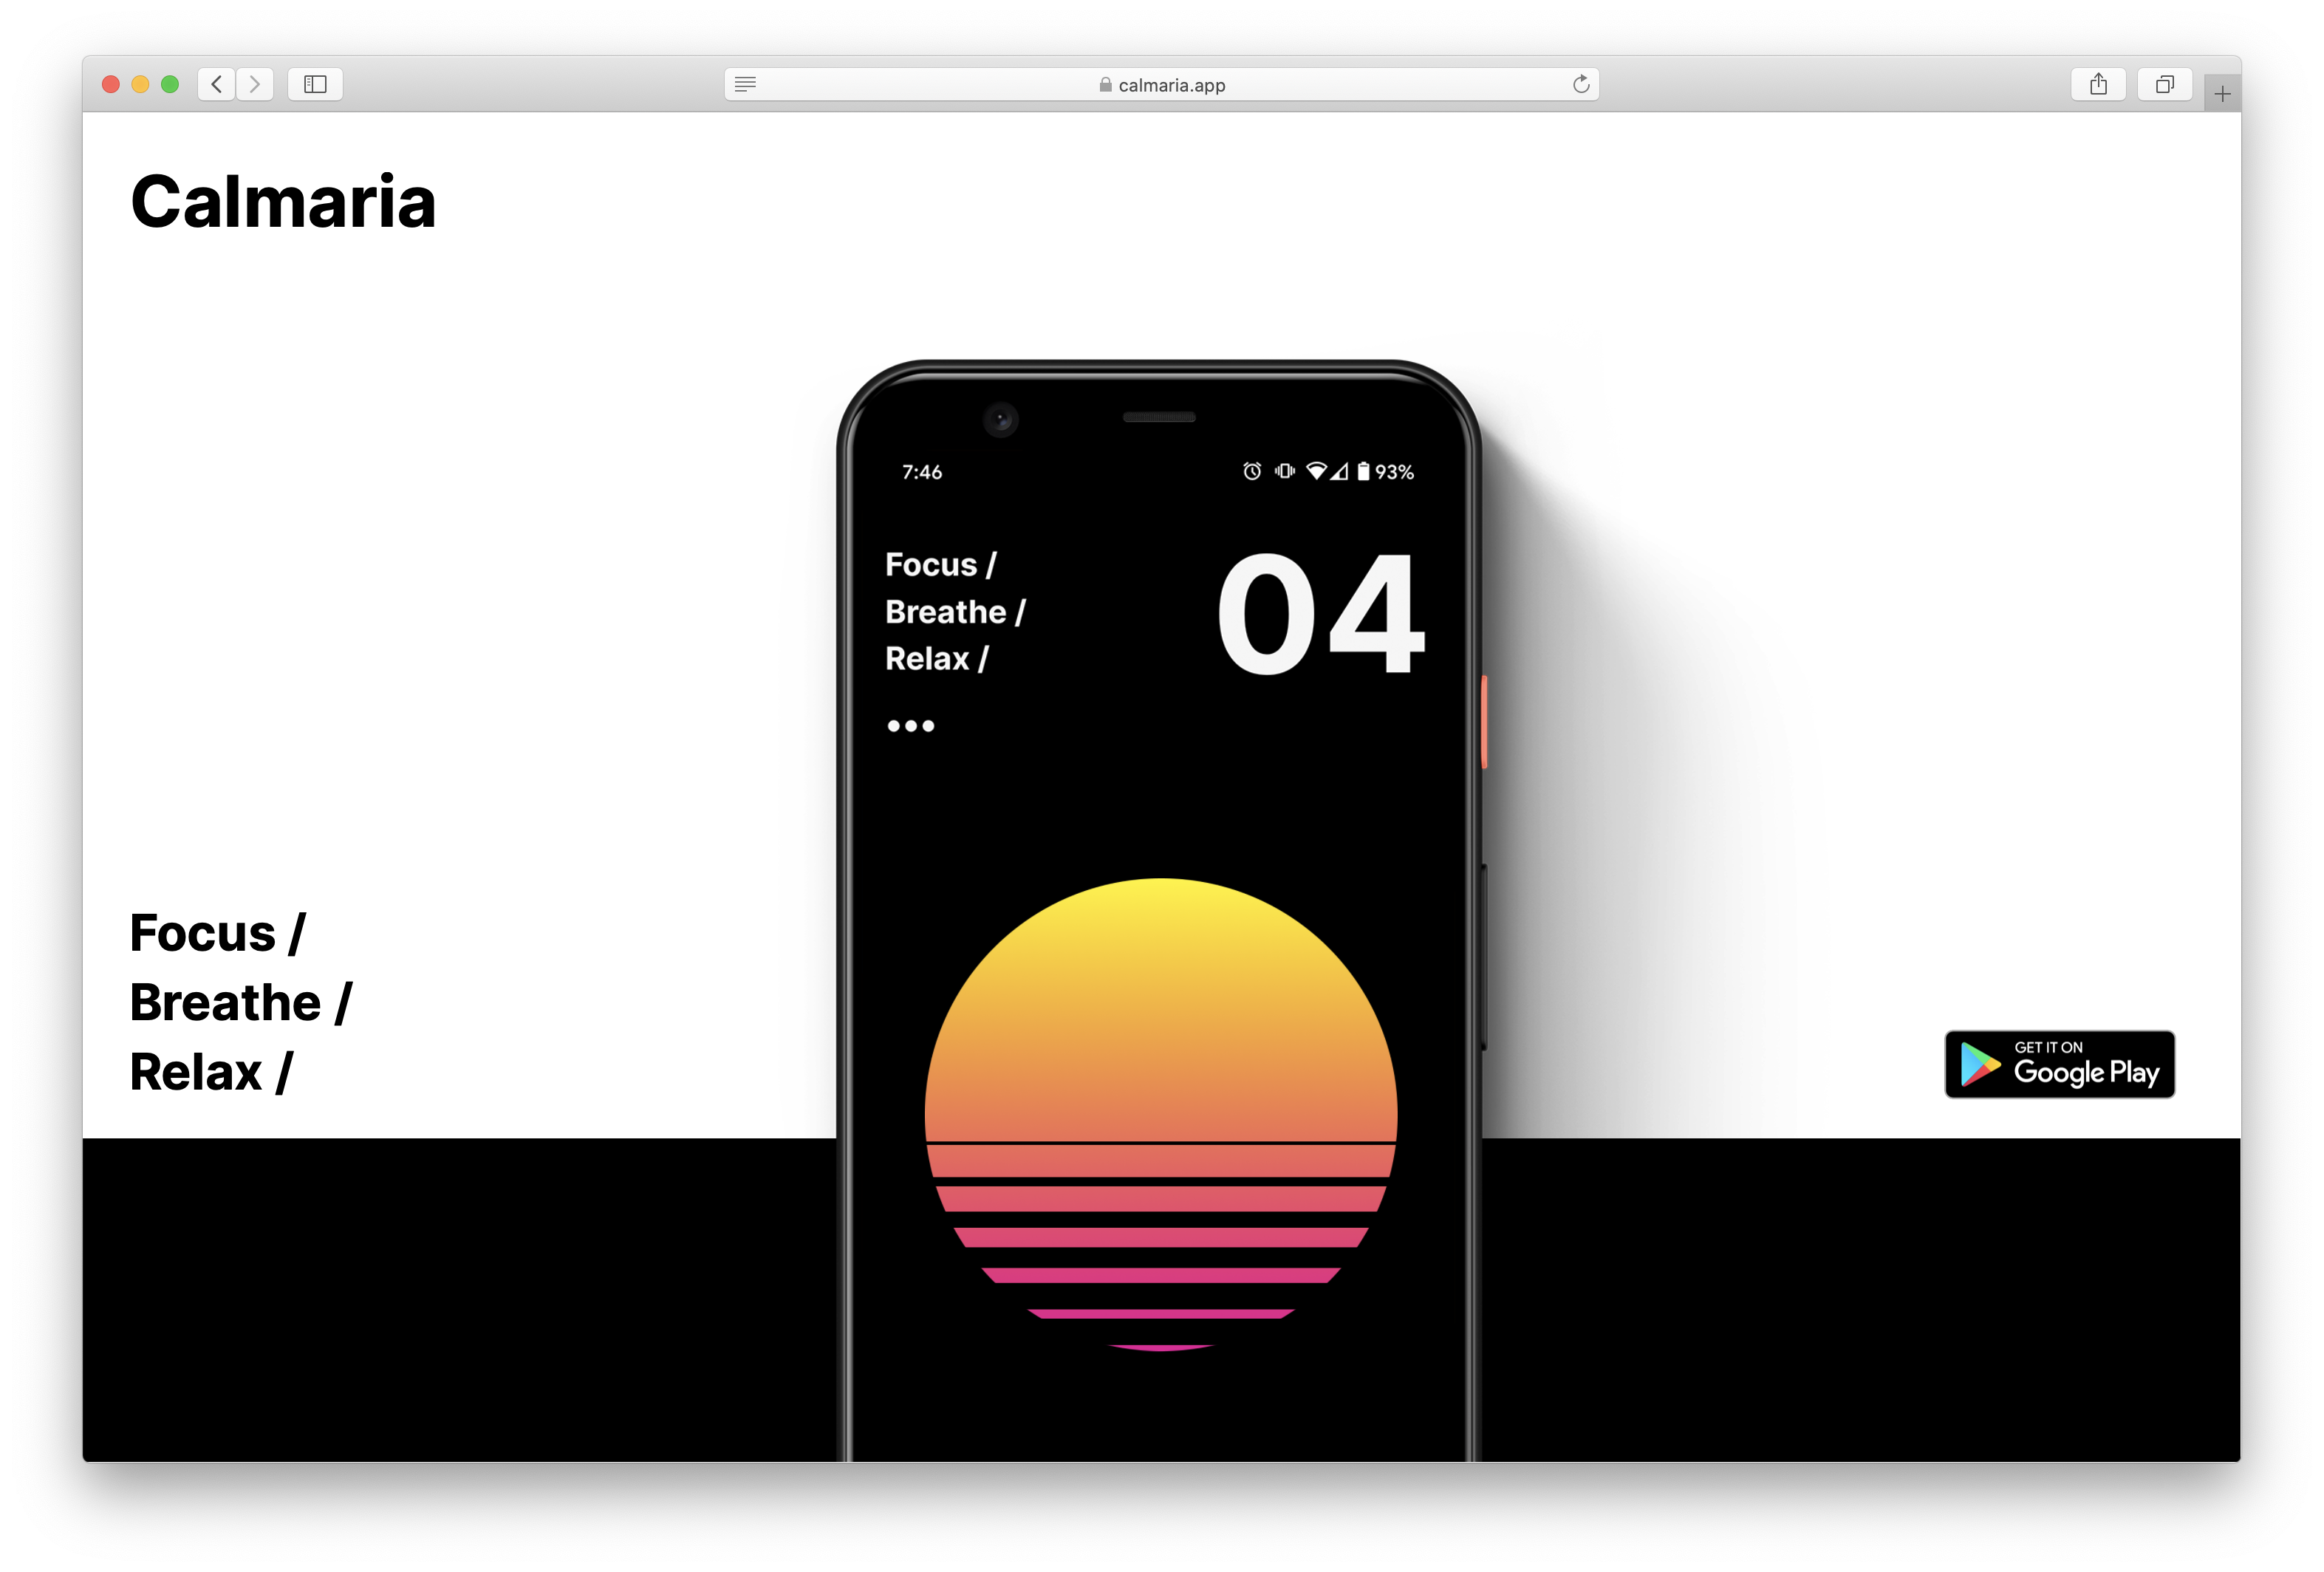 Profile Page screen design idea #98: Calmaria One Page Website Design